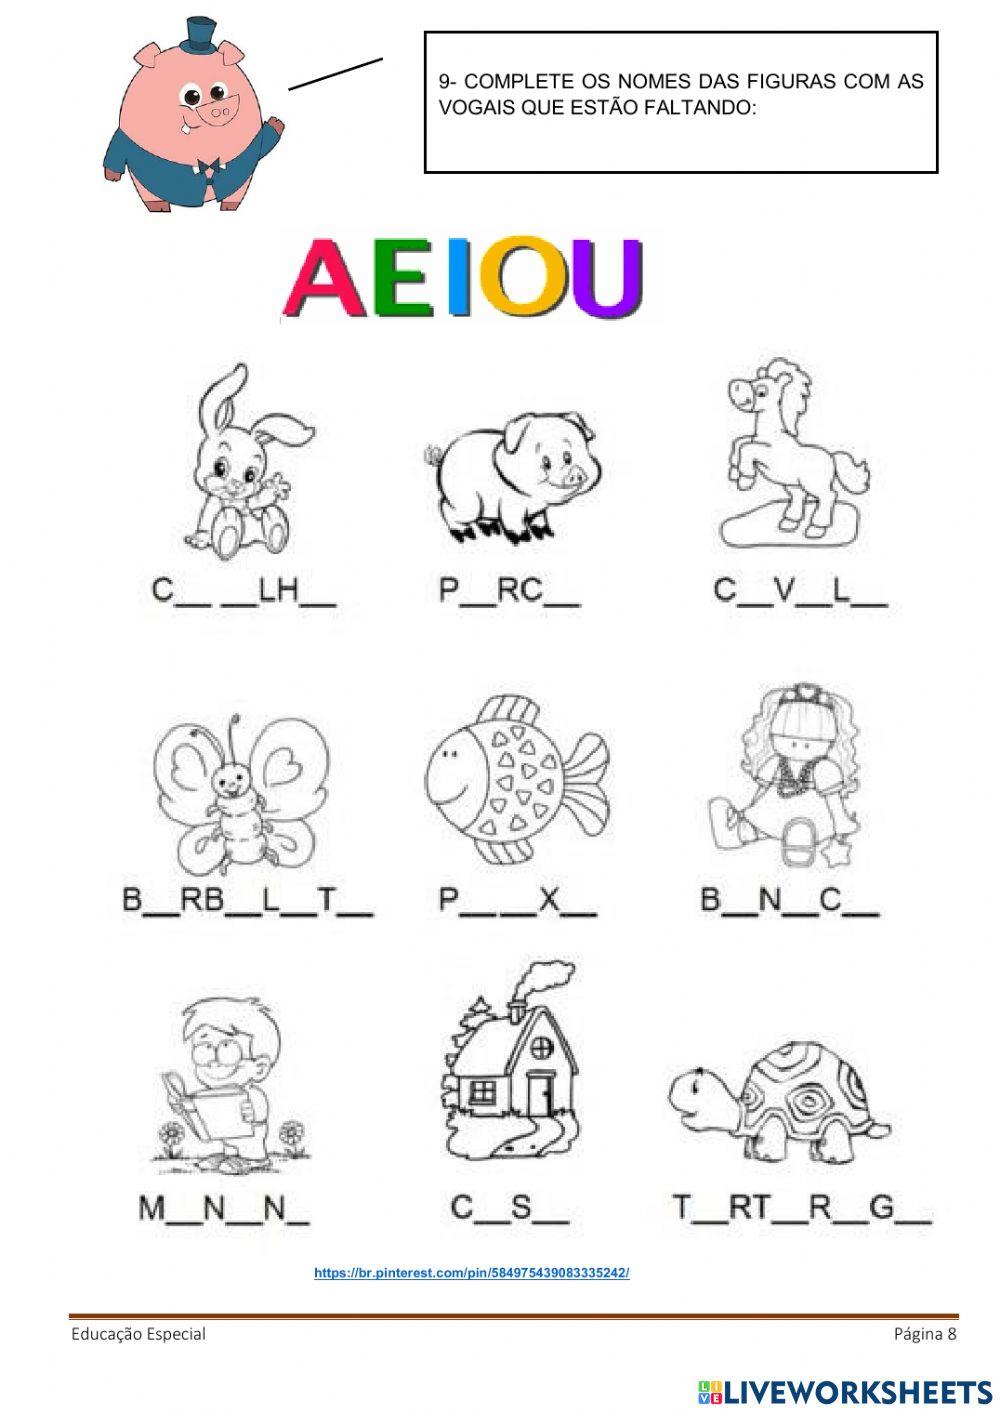 Alfabeto ilustrado, nome das figuras, trava-língua, lista de palavras, vogais.